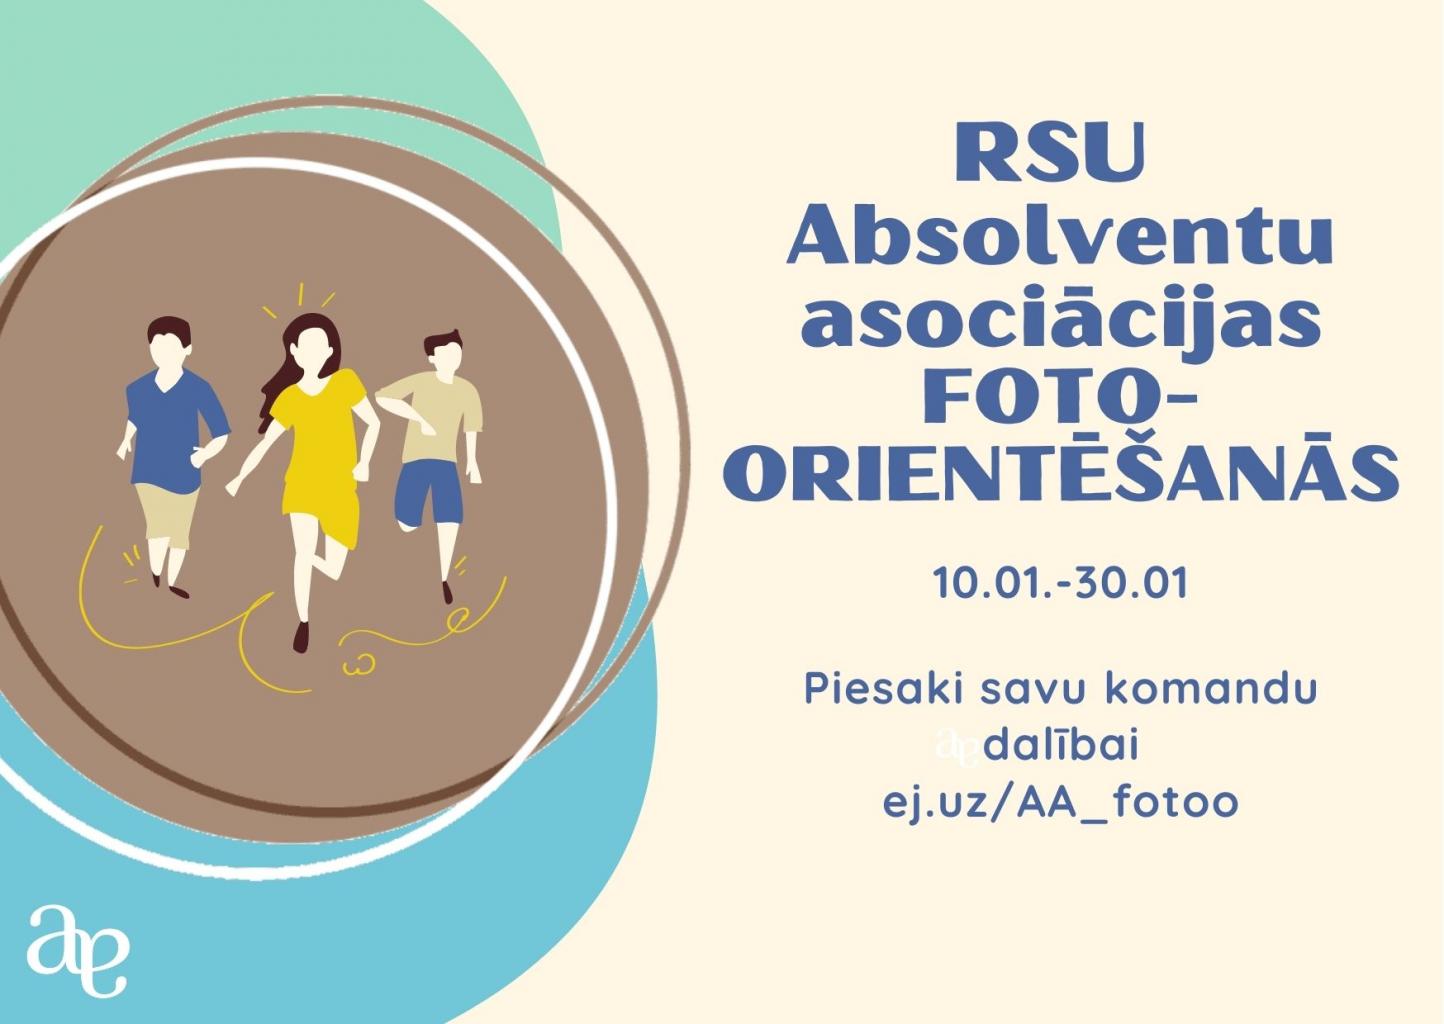 rsu-absolventu-asociacijas-foto-orientesanas.jpg